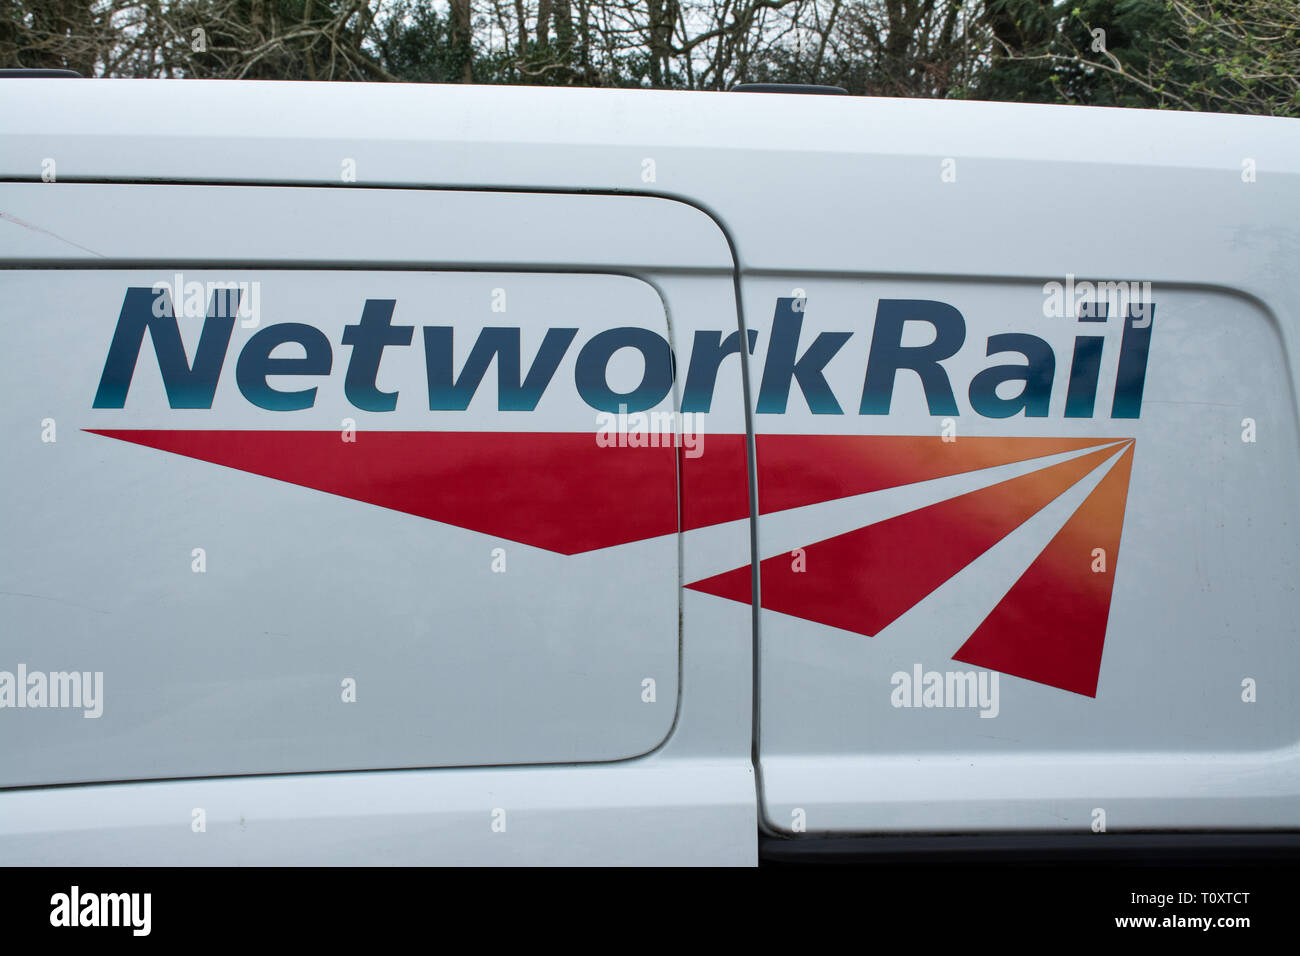 Network rail logo on a white van Stock Photo